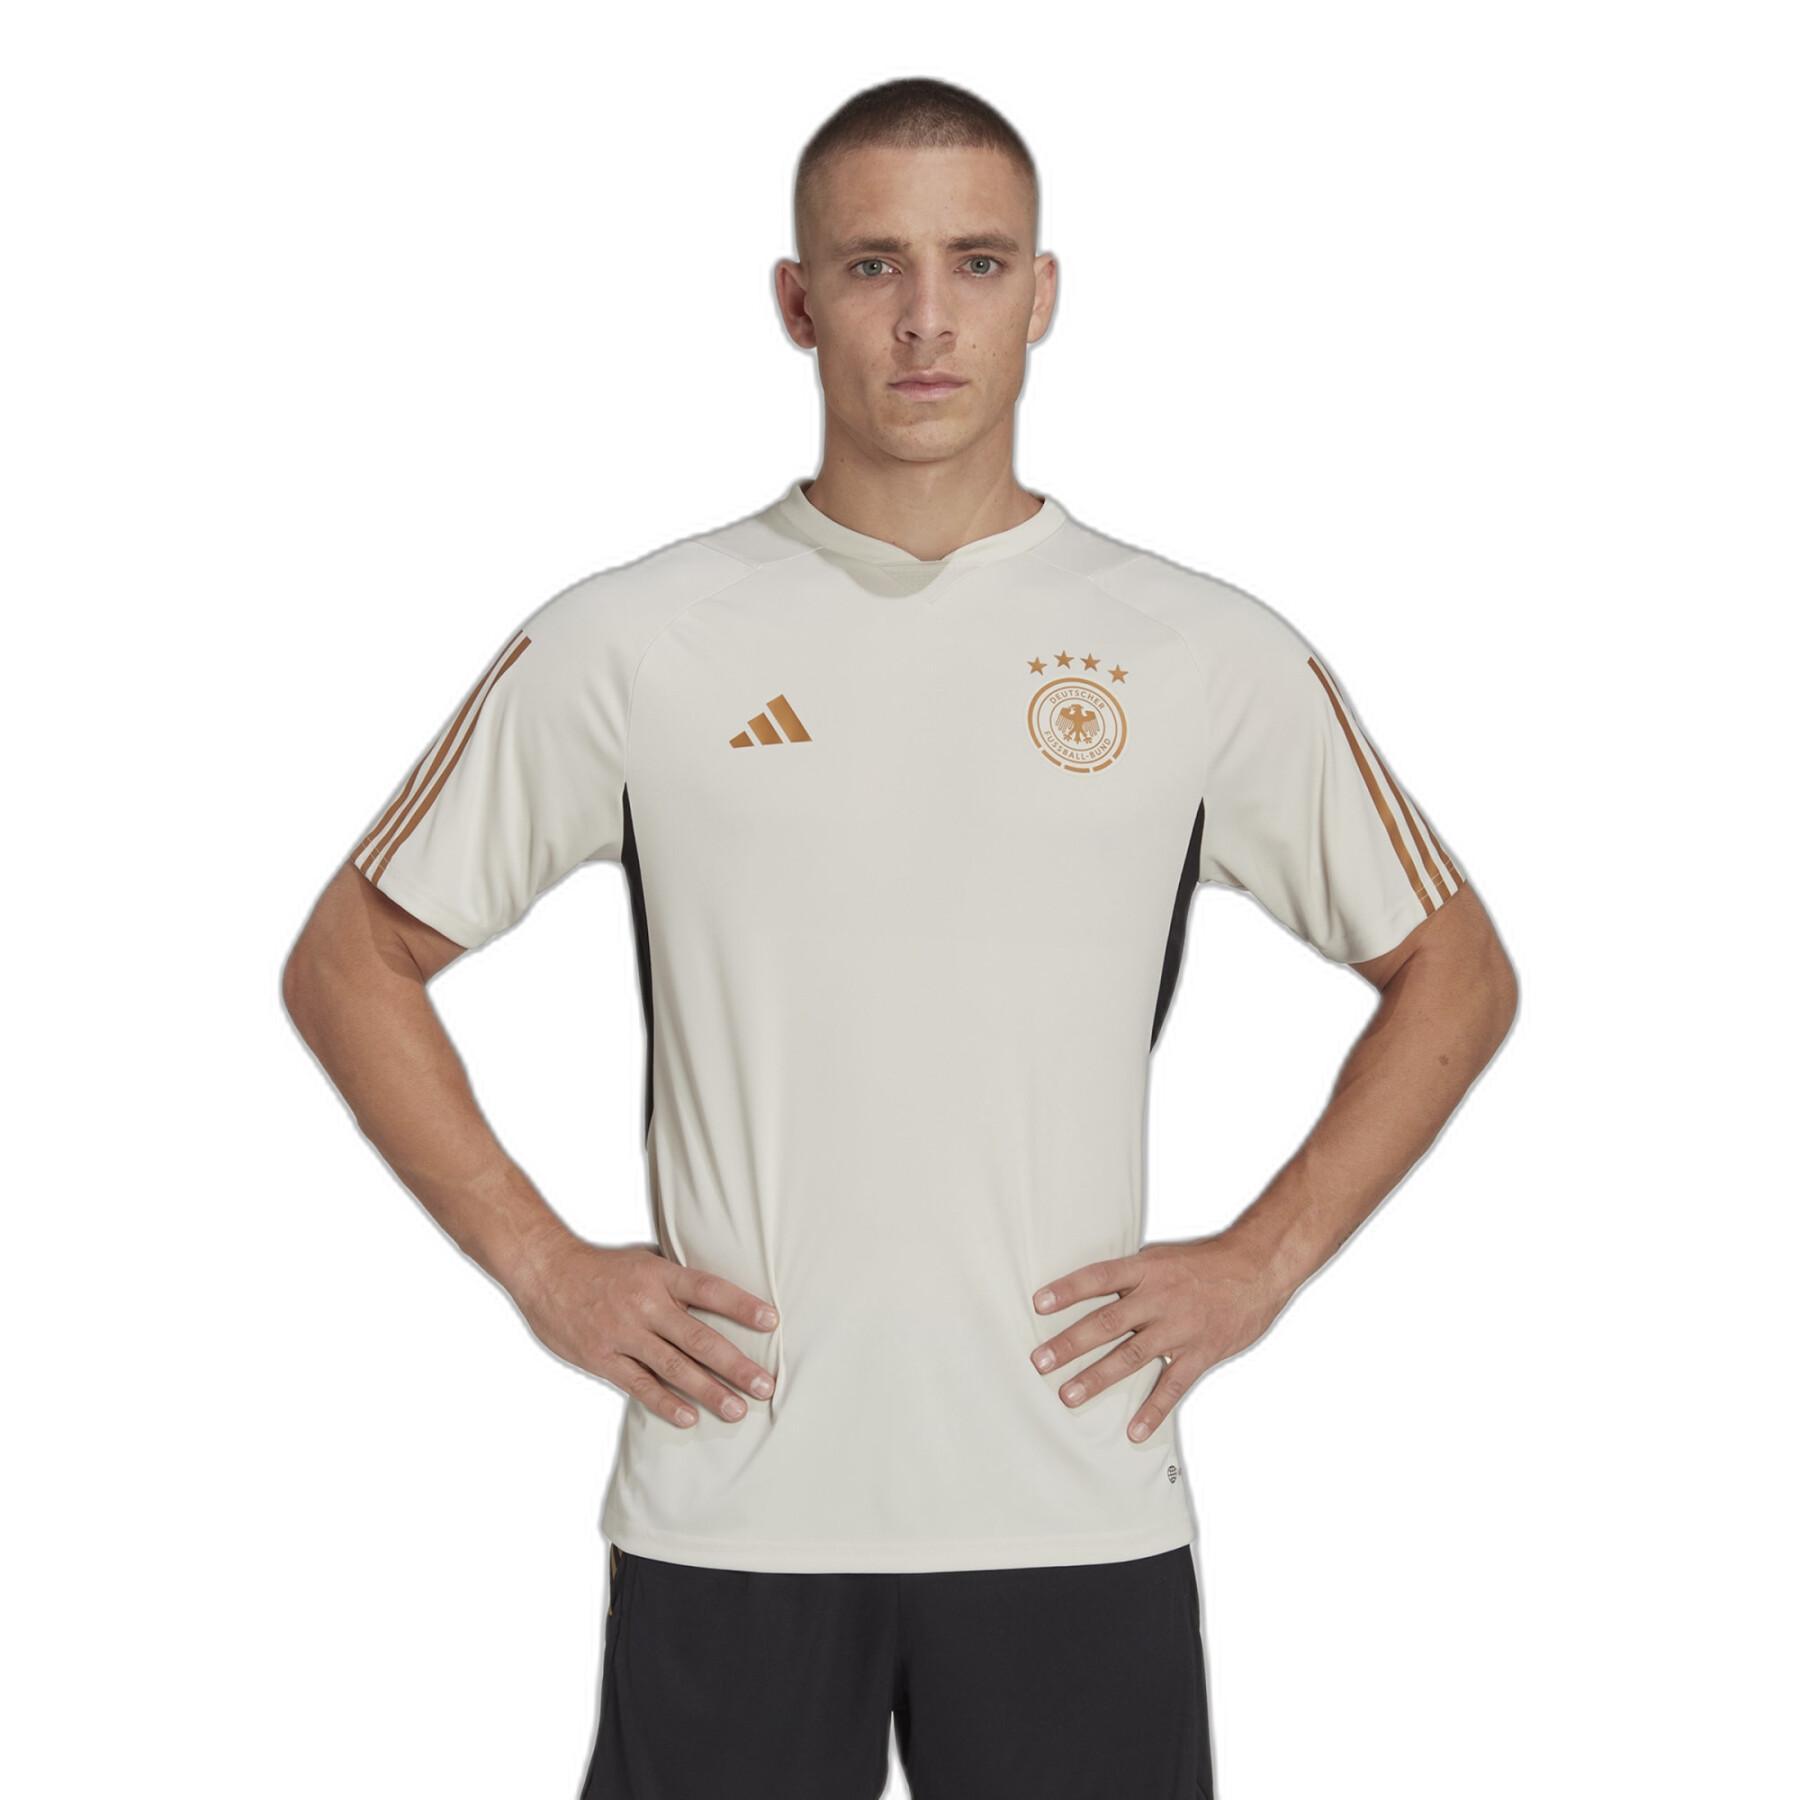 Camiseta de entrenamiento para la Copa Mundial 2022 Allemagne